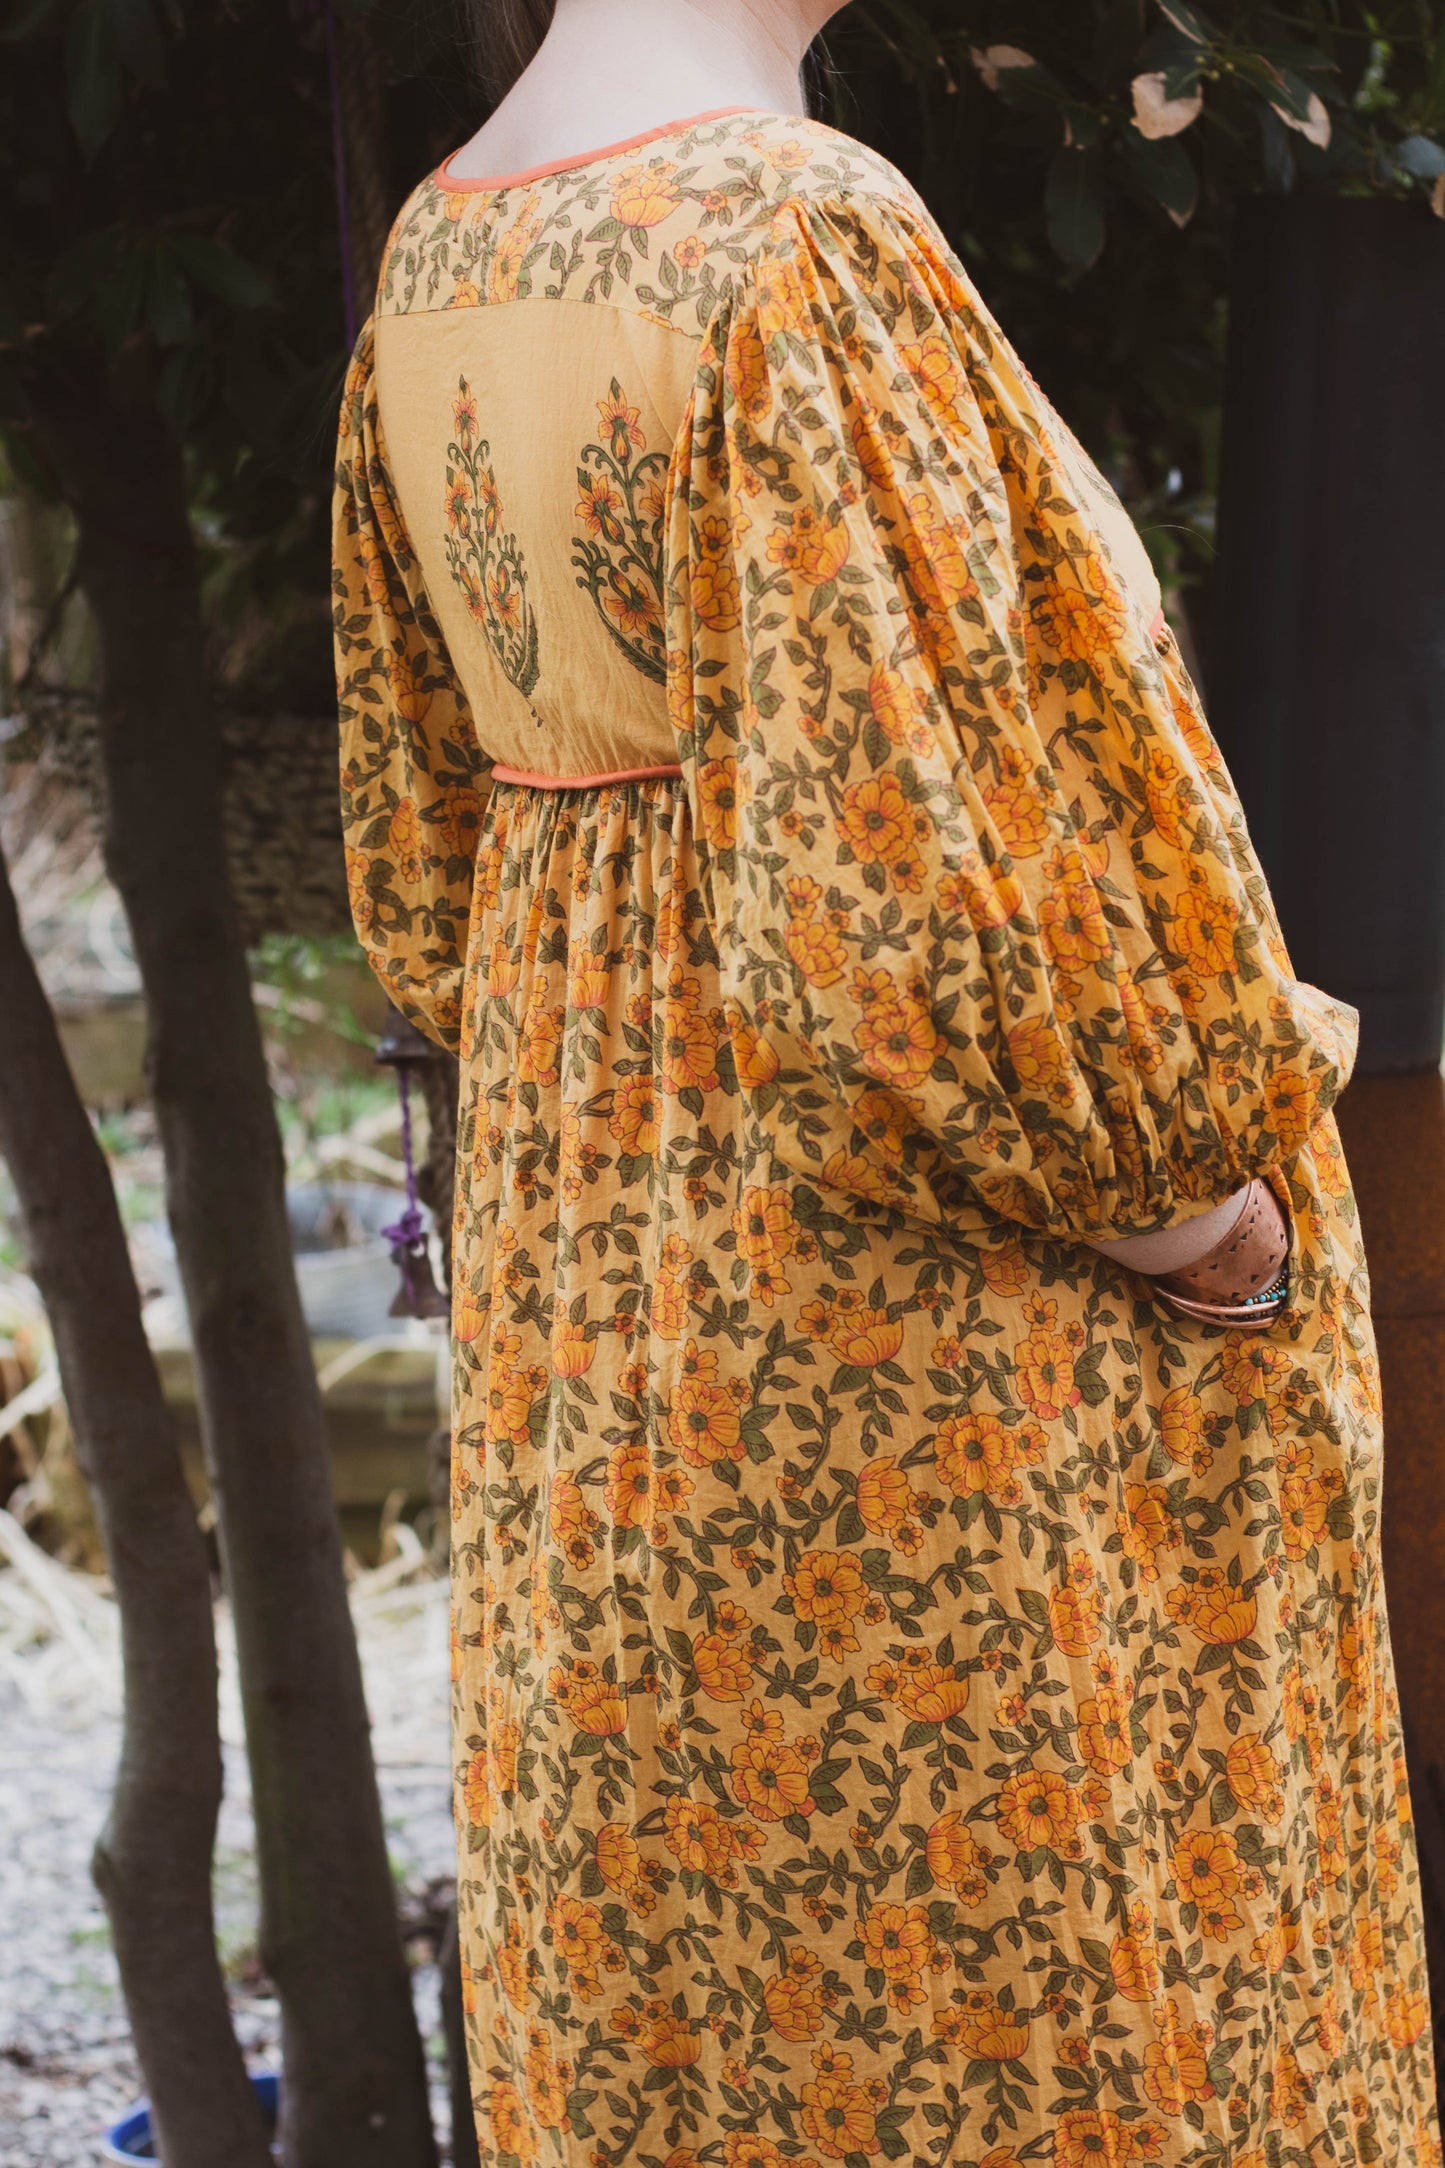 The Saffron Gown